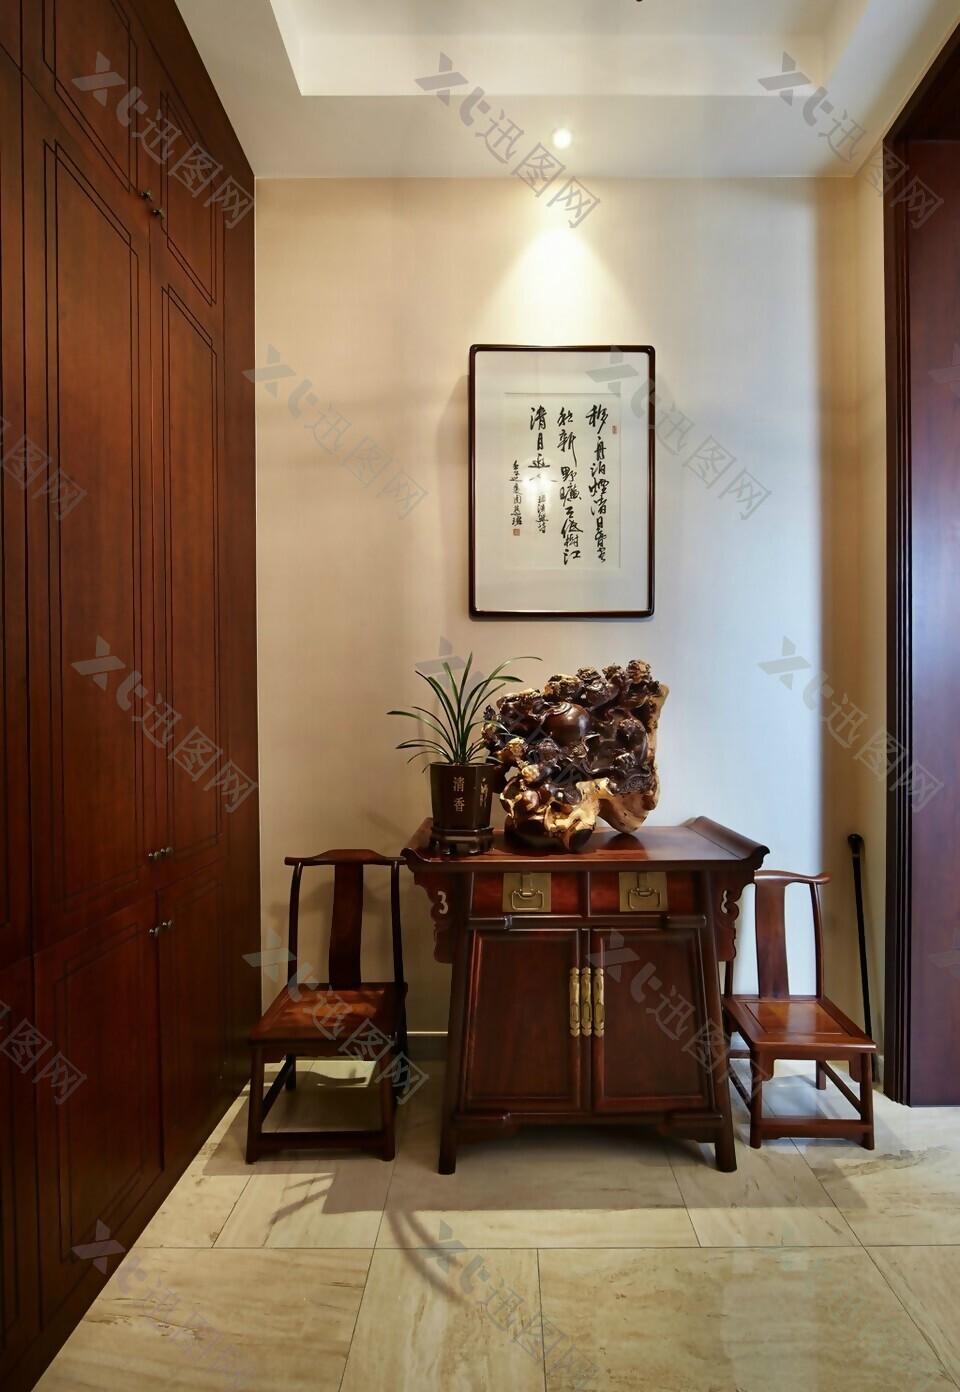 中式时尚室内柜子背景墙效果图